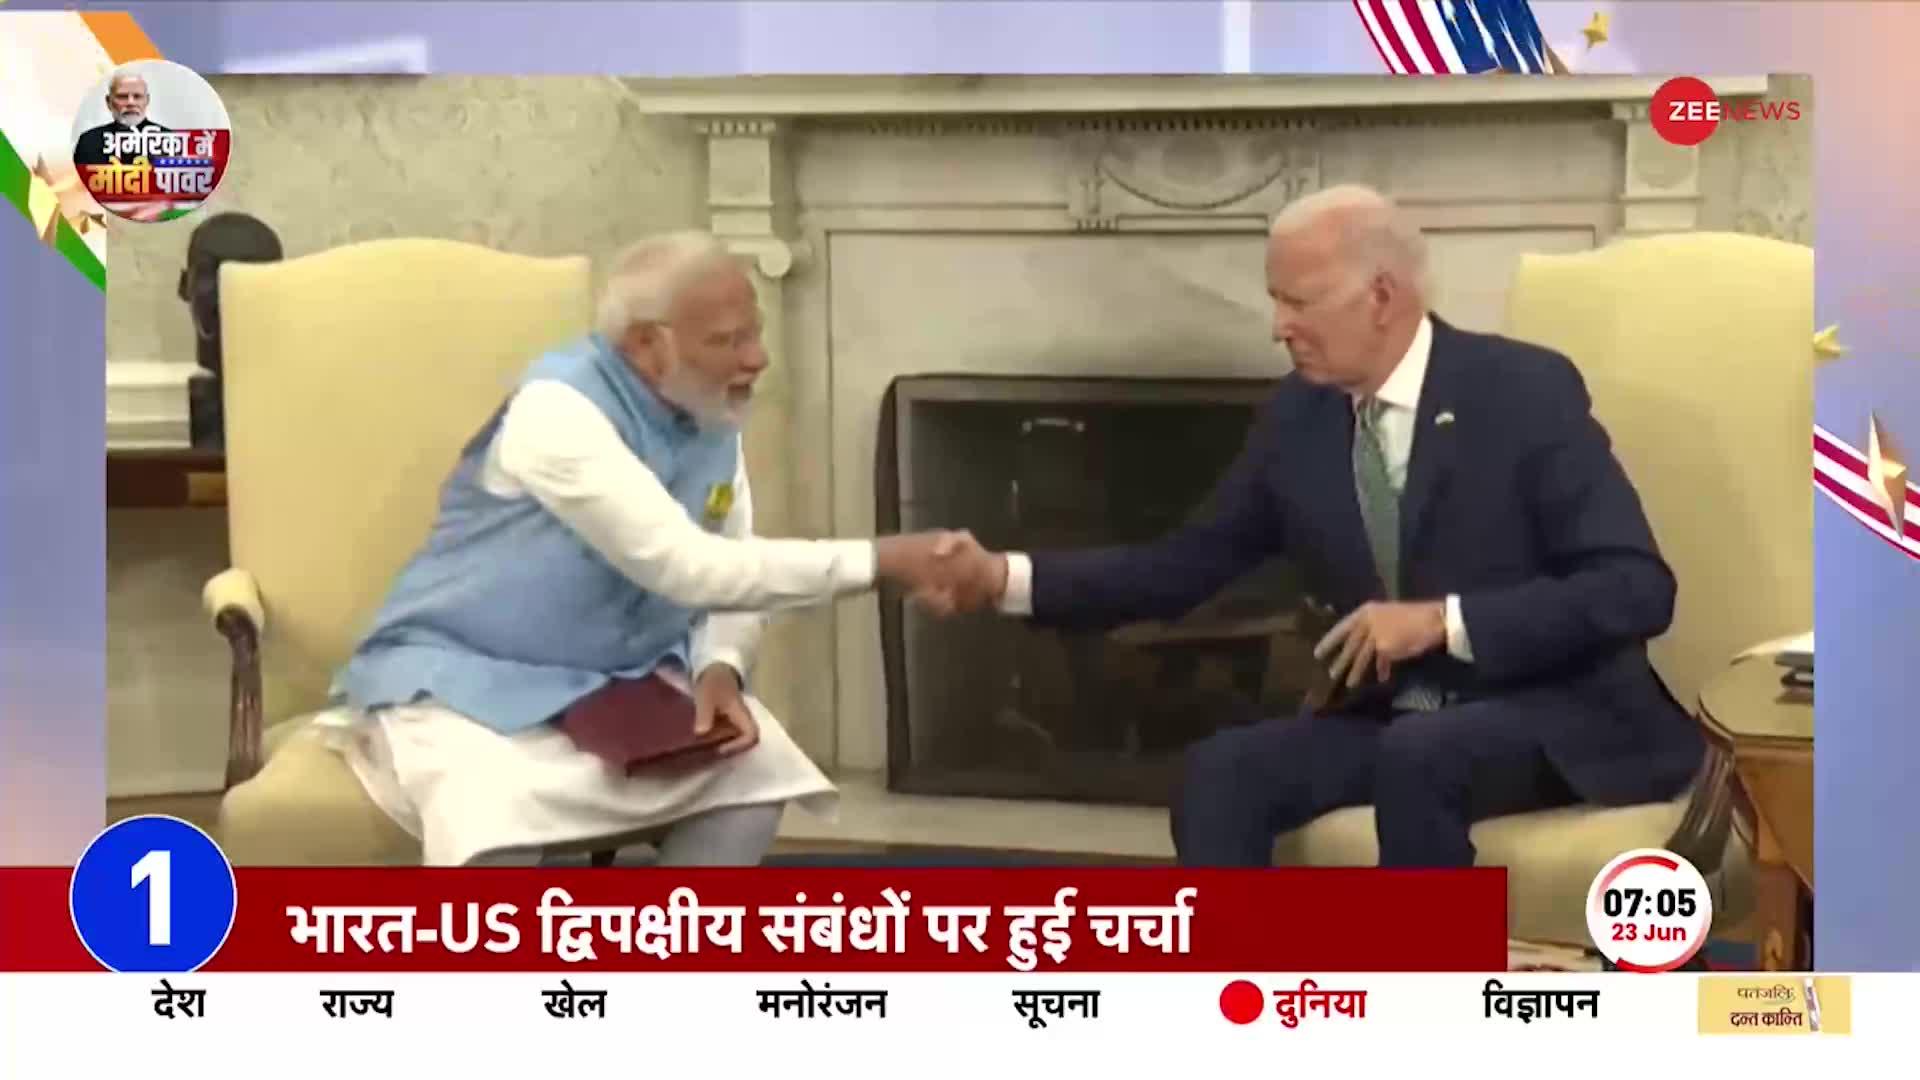 अमेरिका दौरे के तीसरे दिन PM Modi और राष्ट्रपति Joe Biden में द्विपक्षीय बैठक, संबंधों पर चर्चा